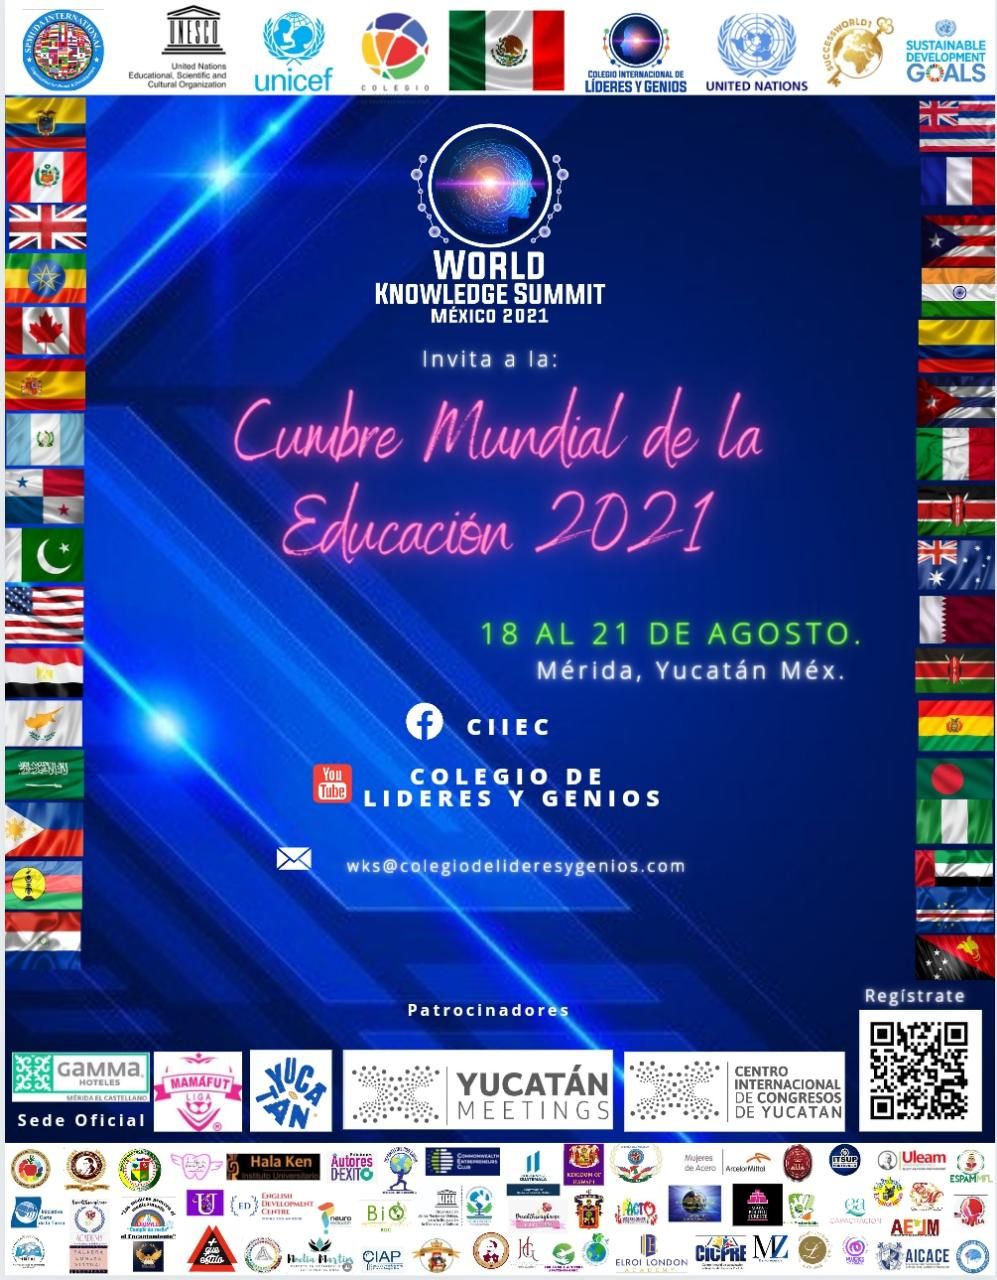 1a Cumbre Mundial de la Educación Mérida Yucatán 